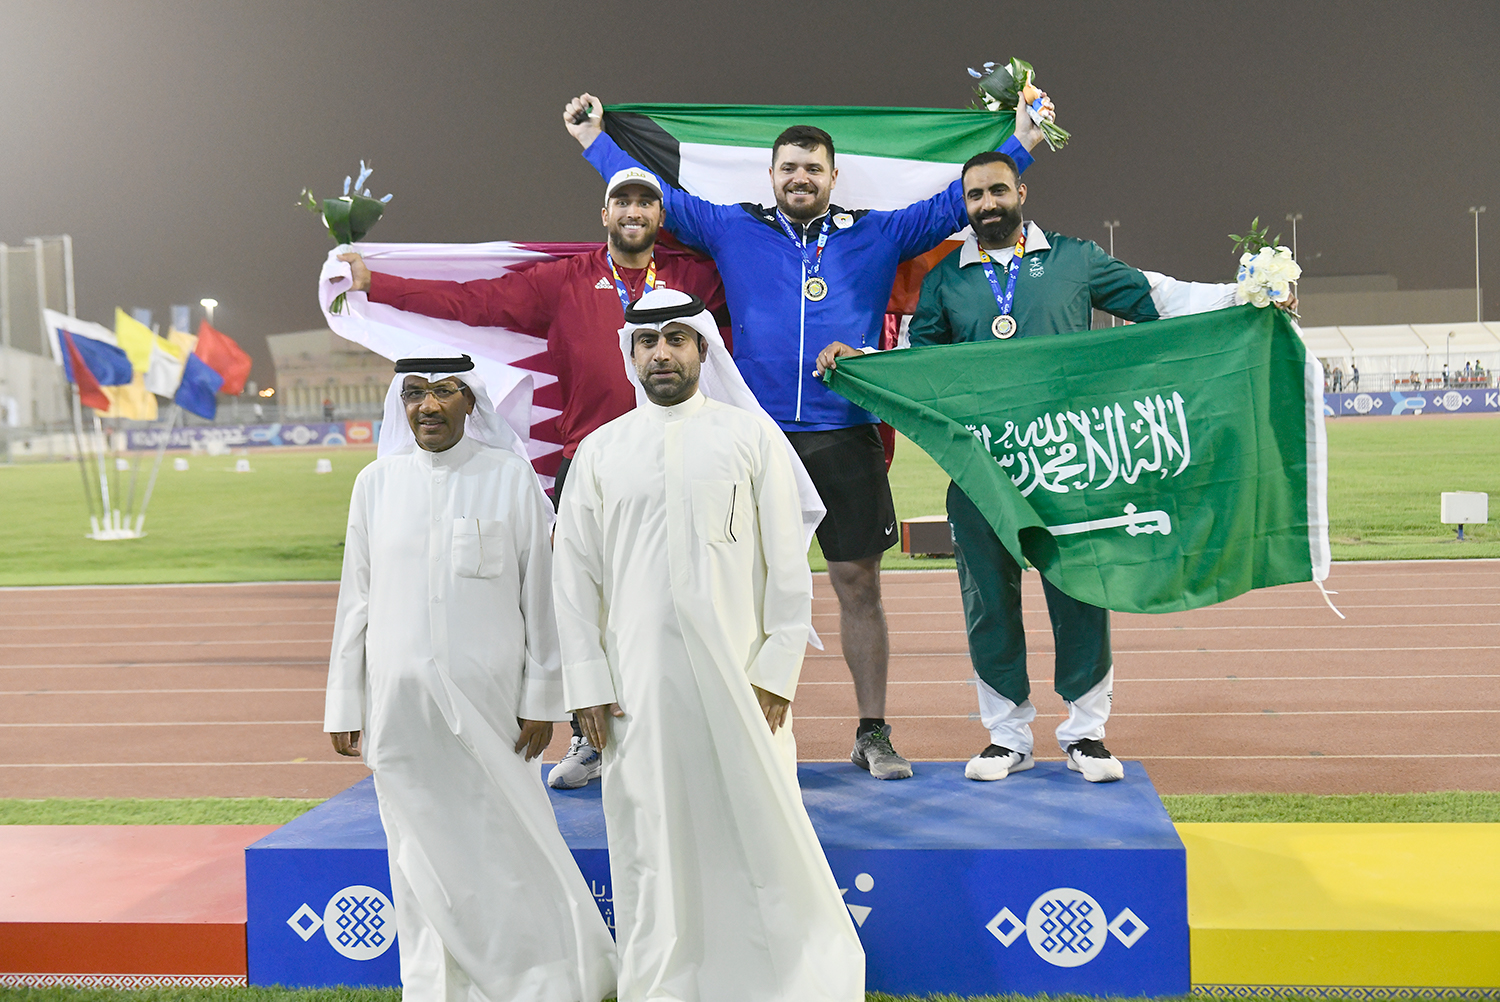 وزير الإعلام: المشاركة الكبيرة في دورة الألعاب الرياضية الخليجية الثالثة في الكويت هي النجاح الأهم